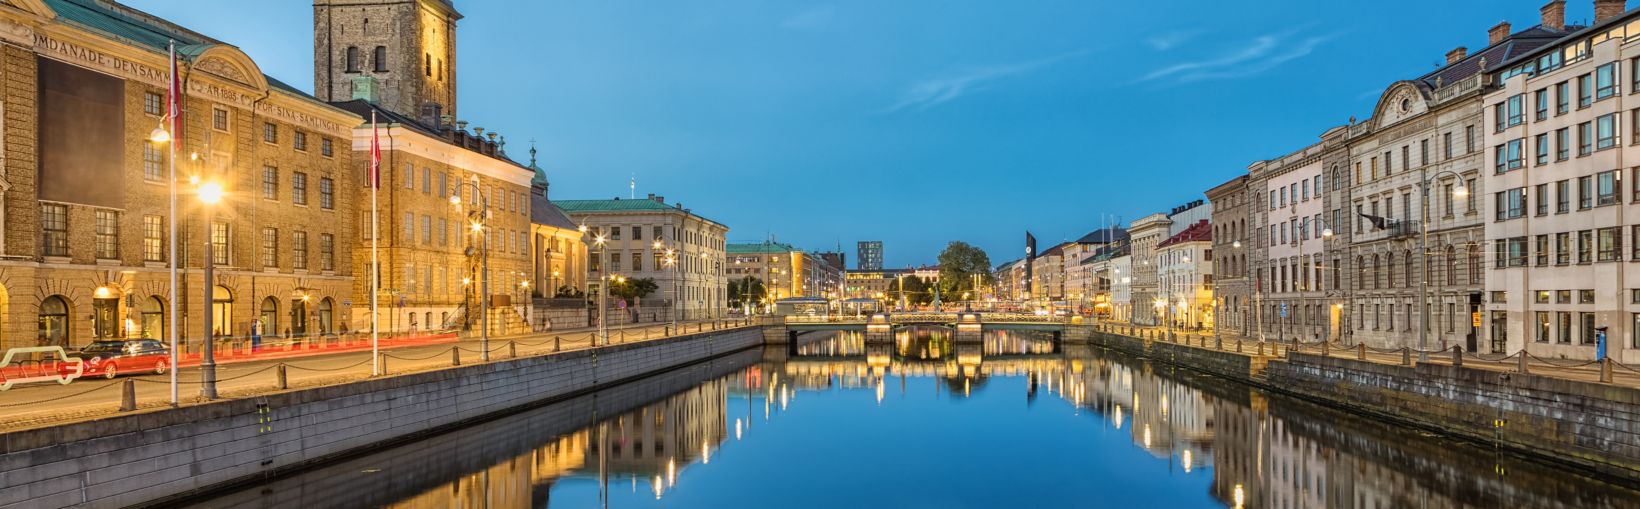 Stadslandschap met groot havenkanaal en Duitse kerk (Christinae-kerk) in de schemering in Göteborg, Zweden